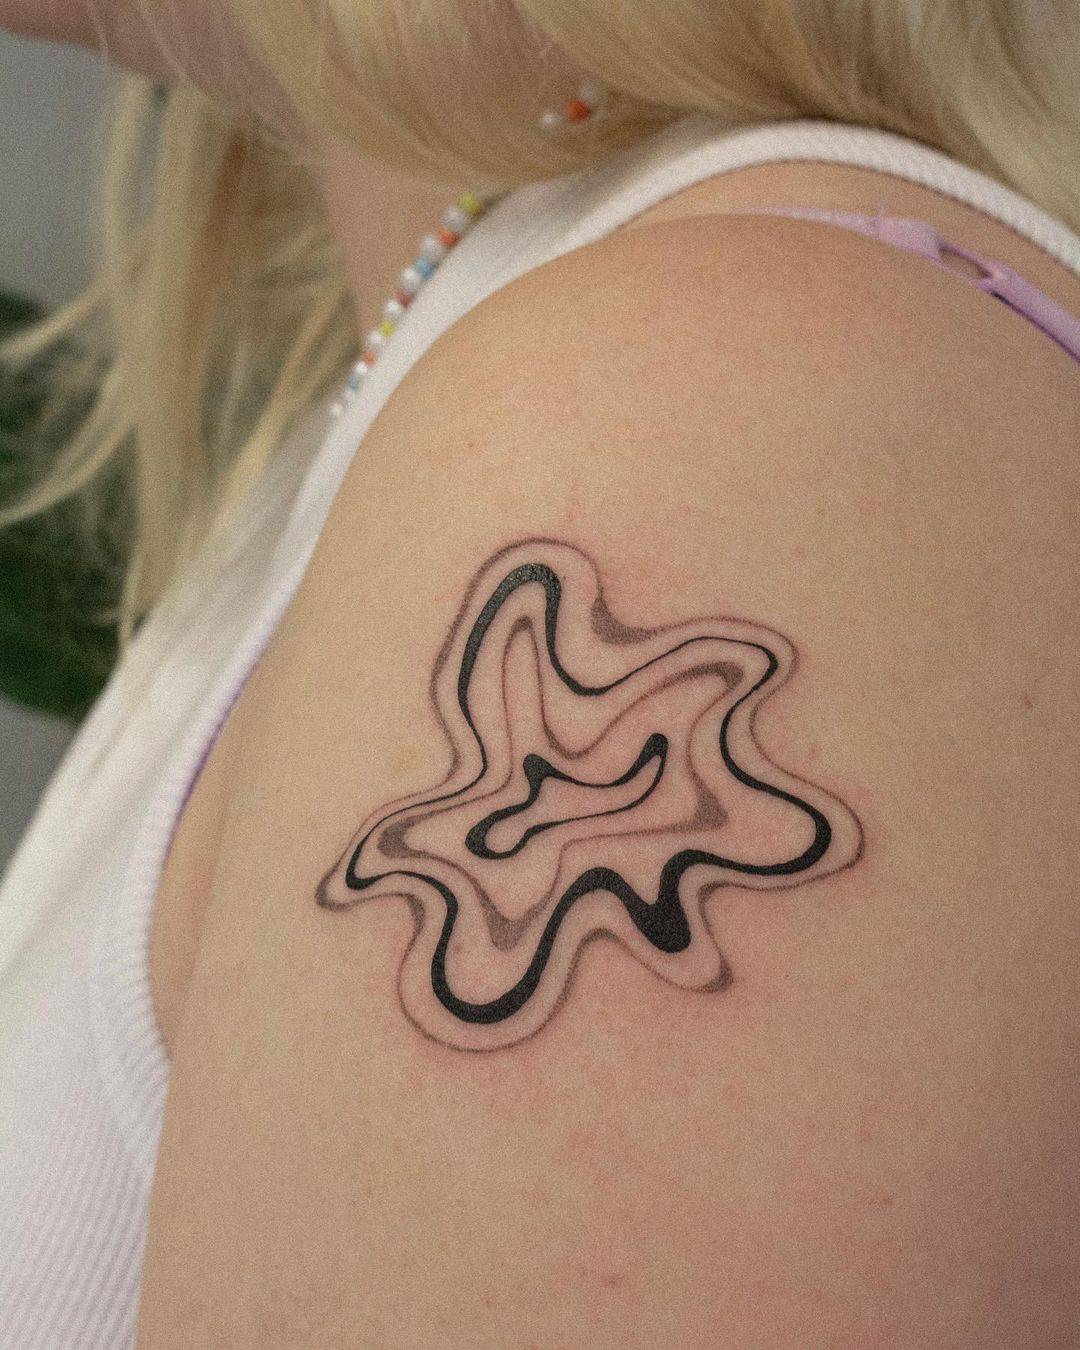 Minimalistic tattoo by bloomtattooart